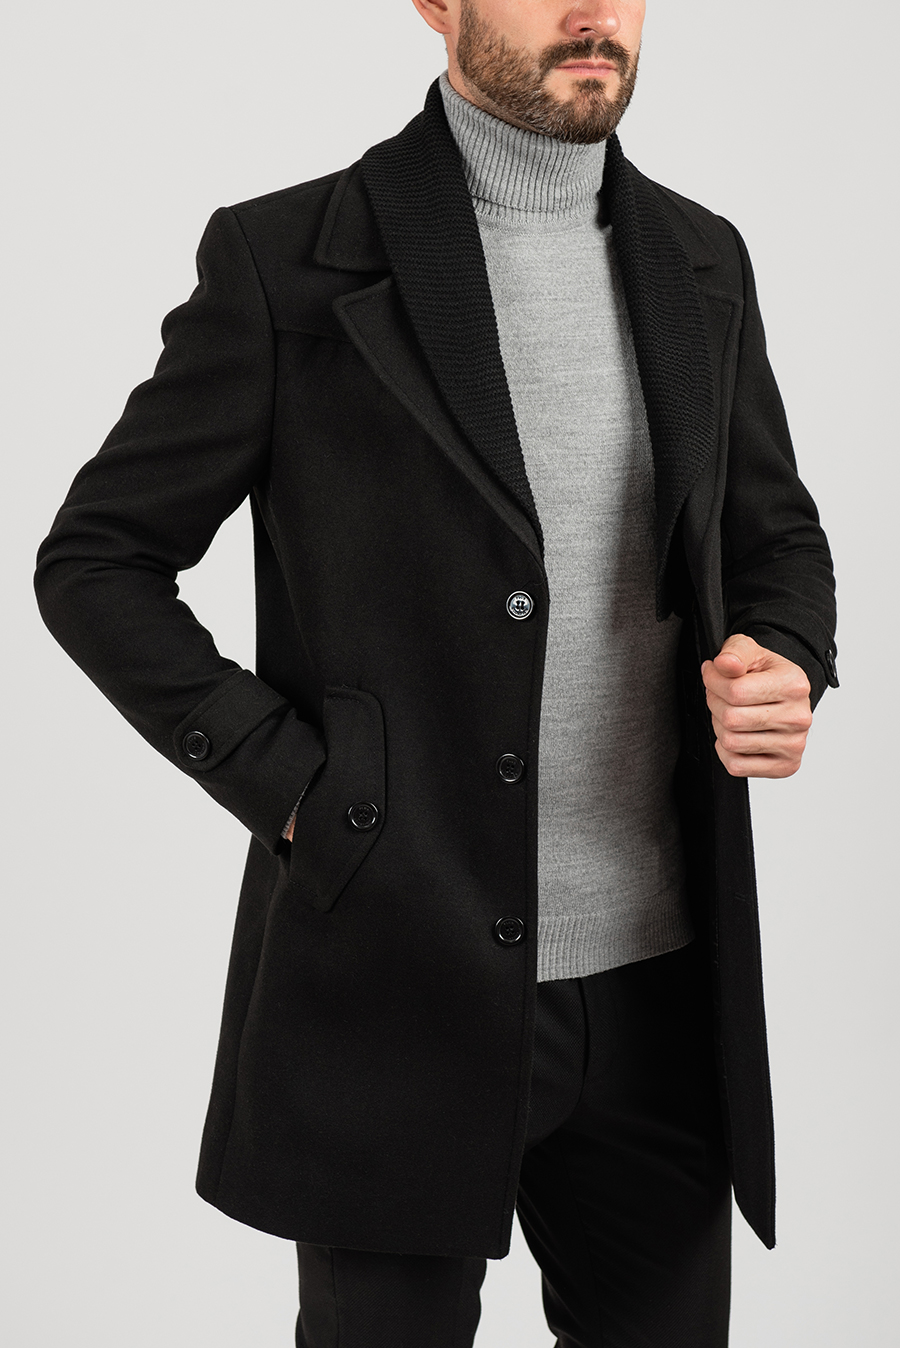 Купить черное пальто мужское. Мужское пальто woolen Coat. Stravardi пальто мужское. Queento пальто мужское. Мужское пальто Рик Декард.